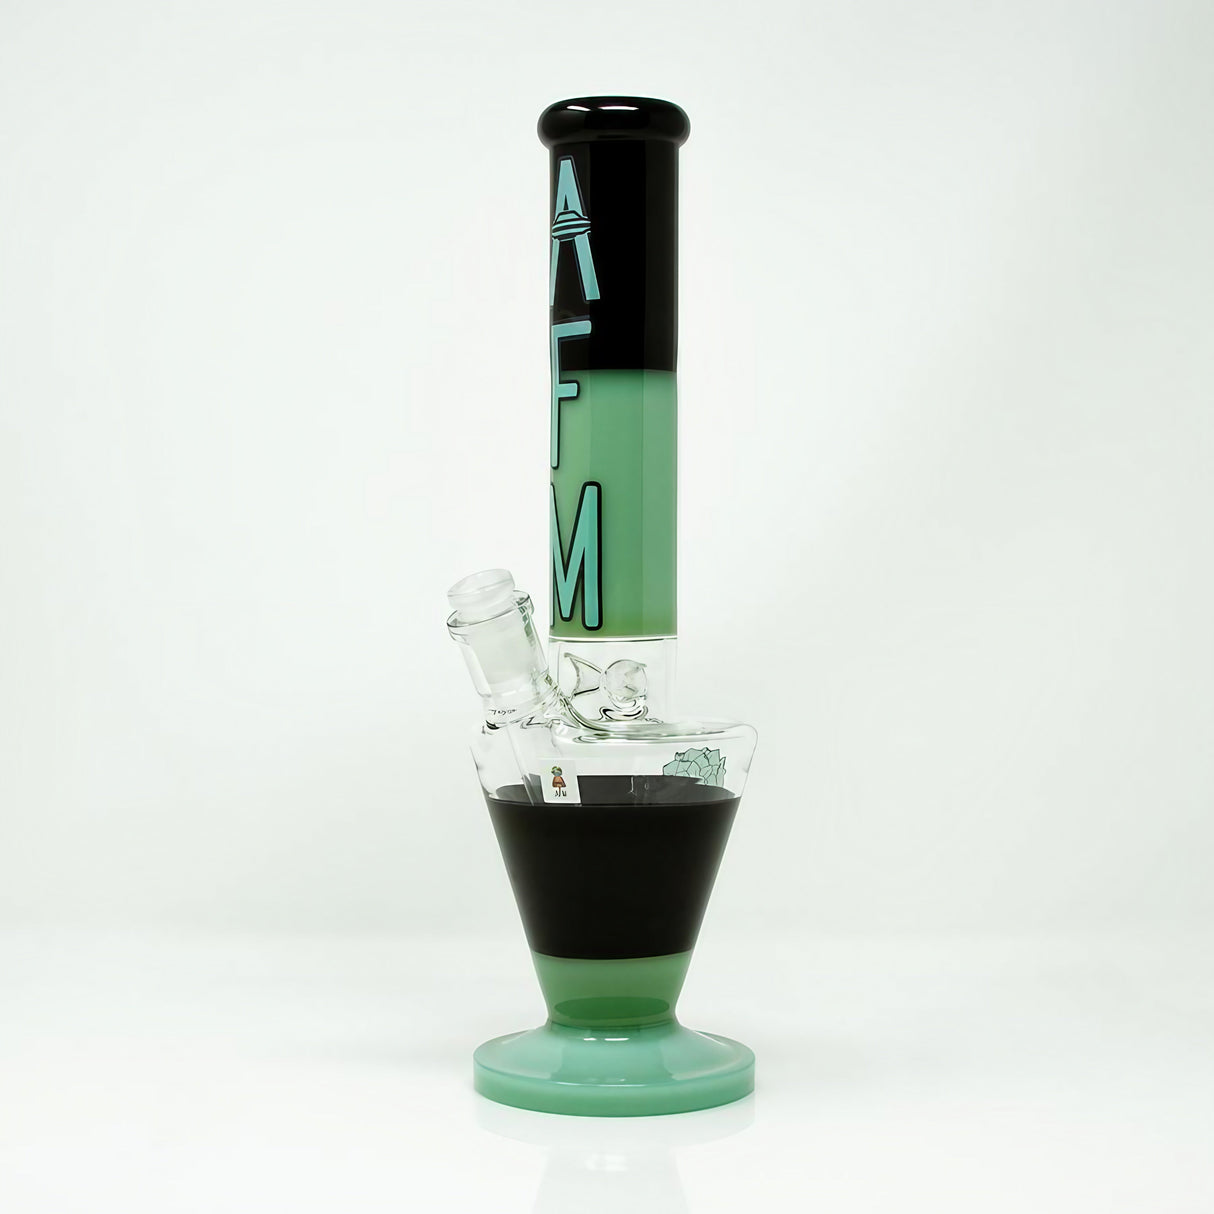 AFM Upsidedown Beaker Bong in Zebra Design, 18", Glass on Glass Joint, Front View on White